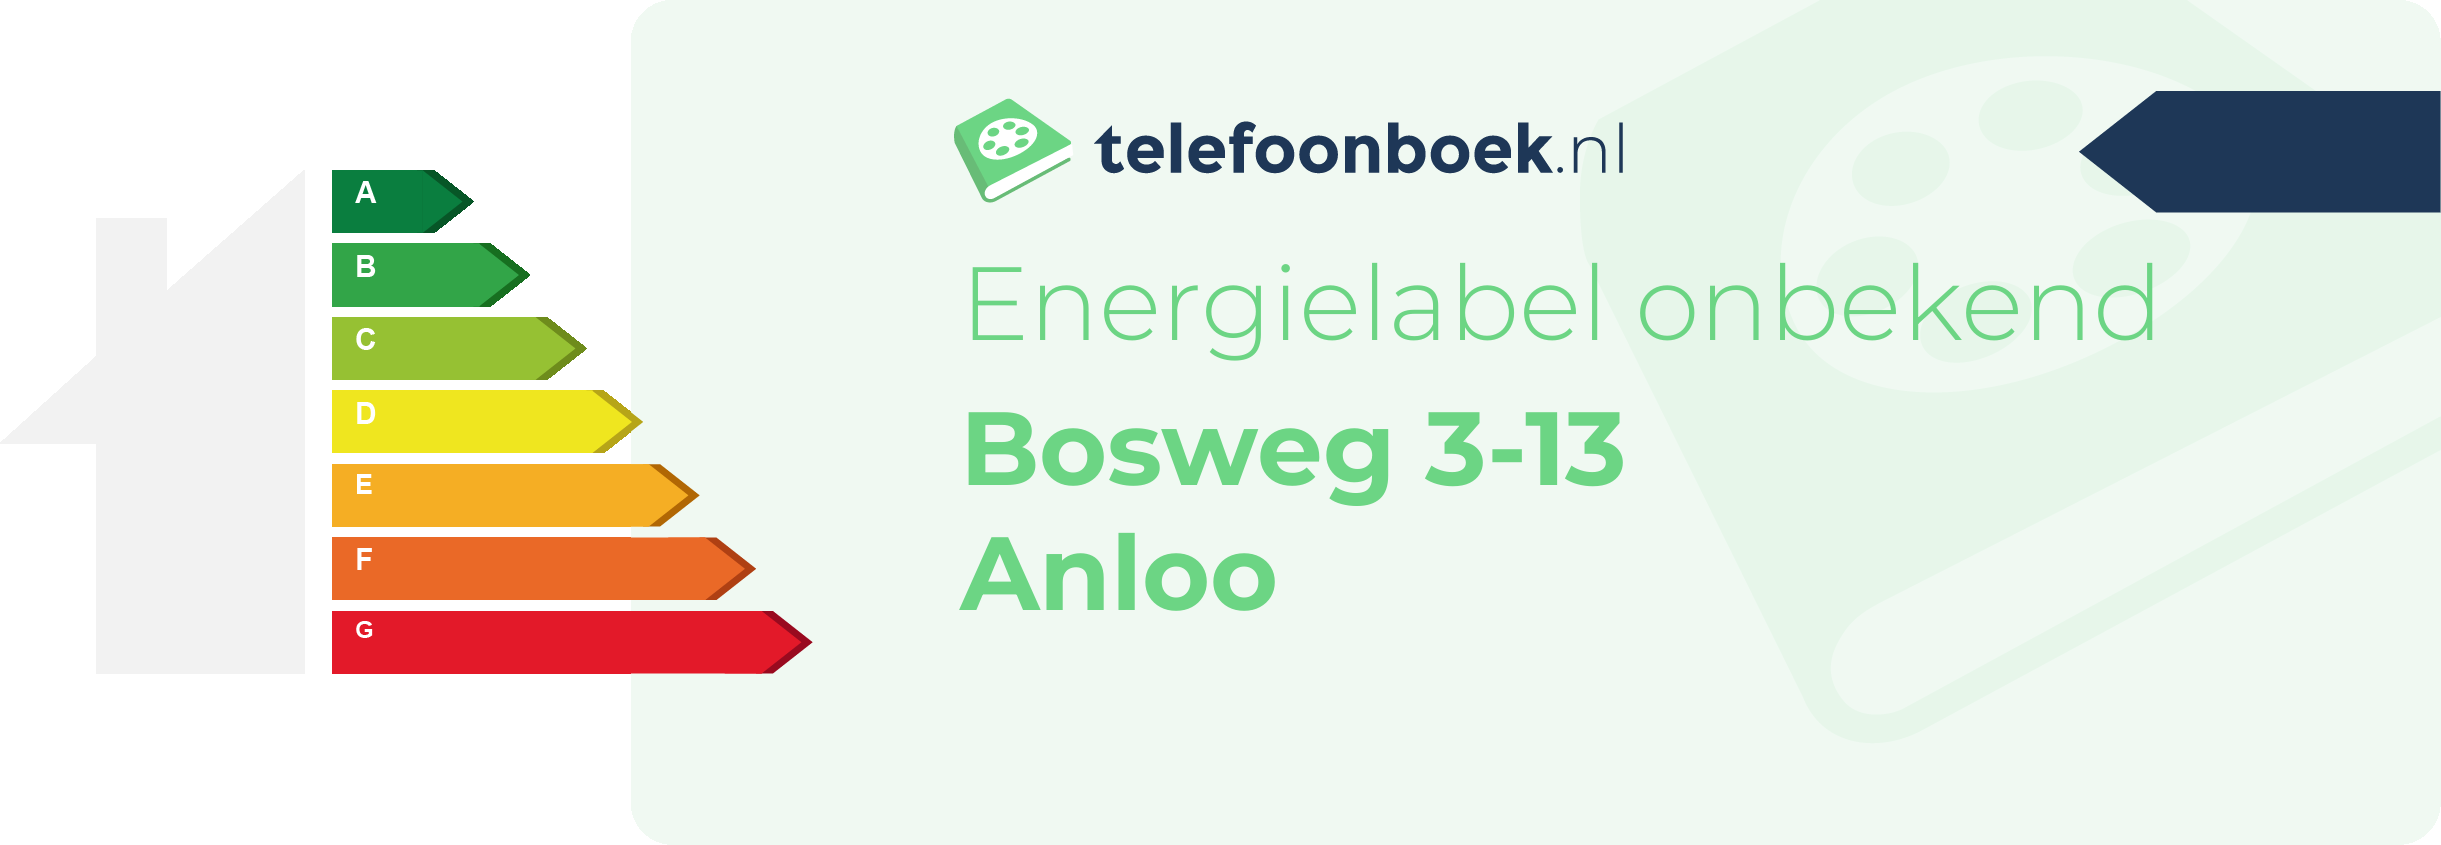 Energielabel Bosweg 3-13 Anloo